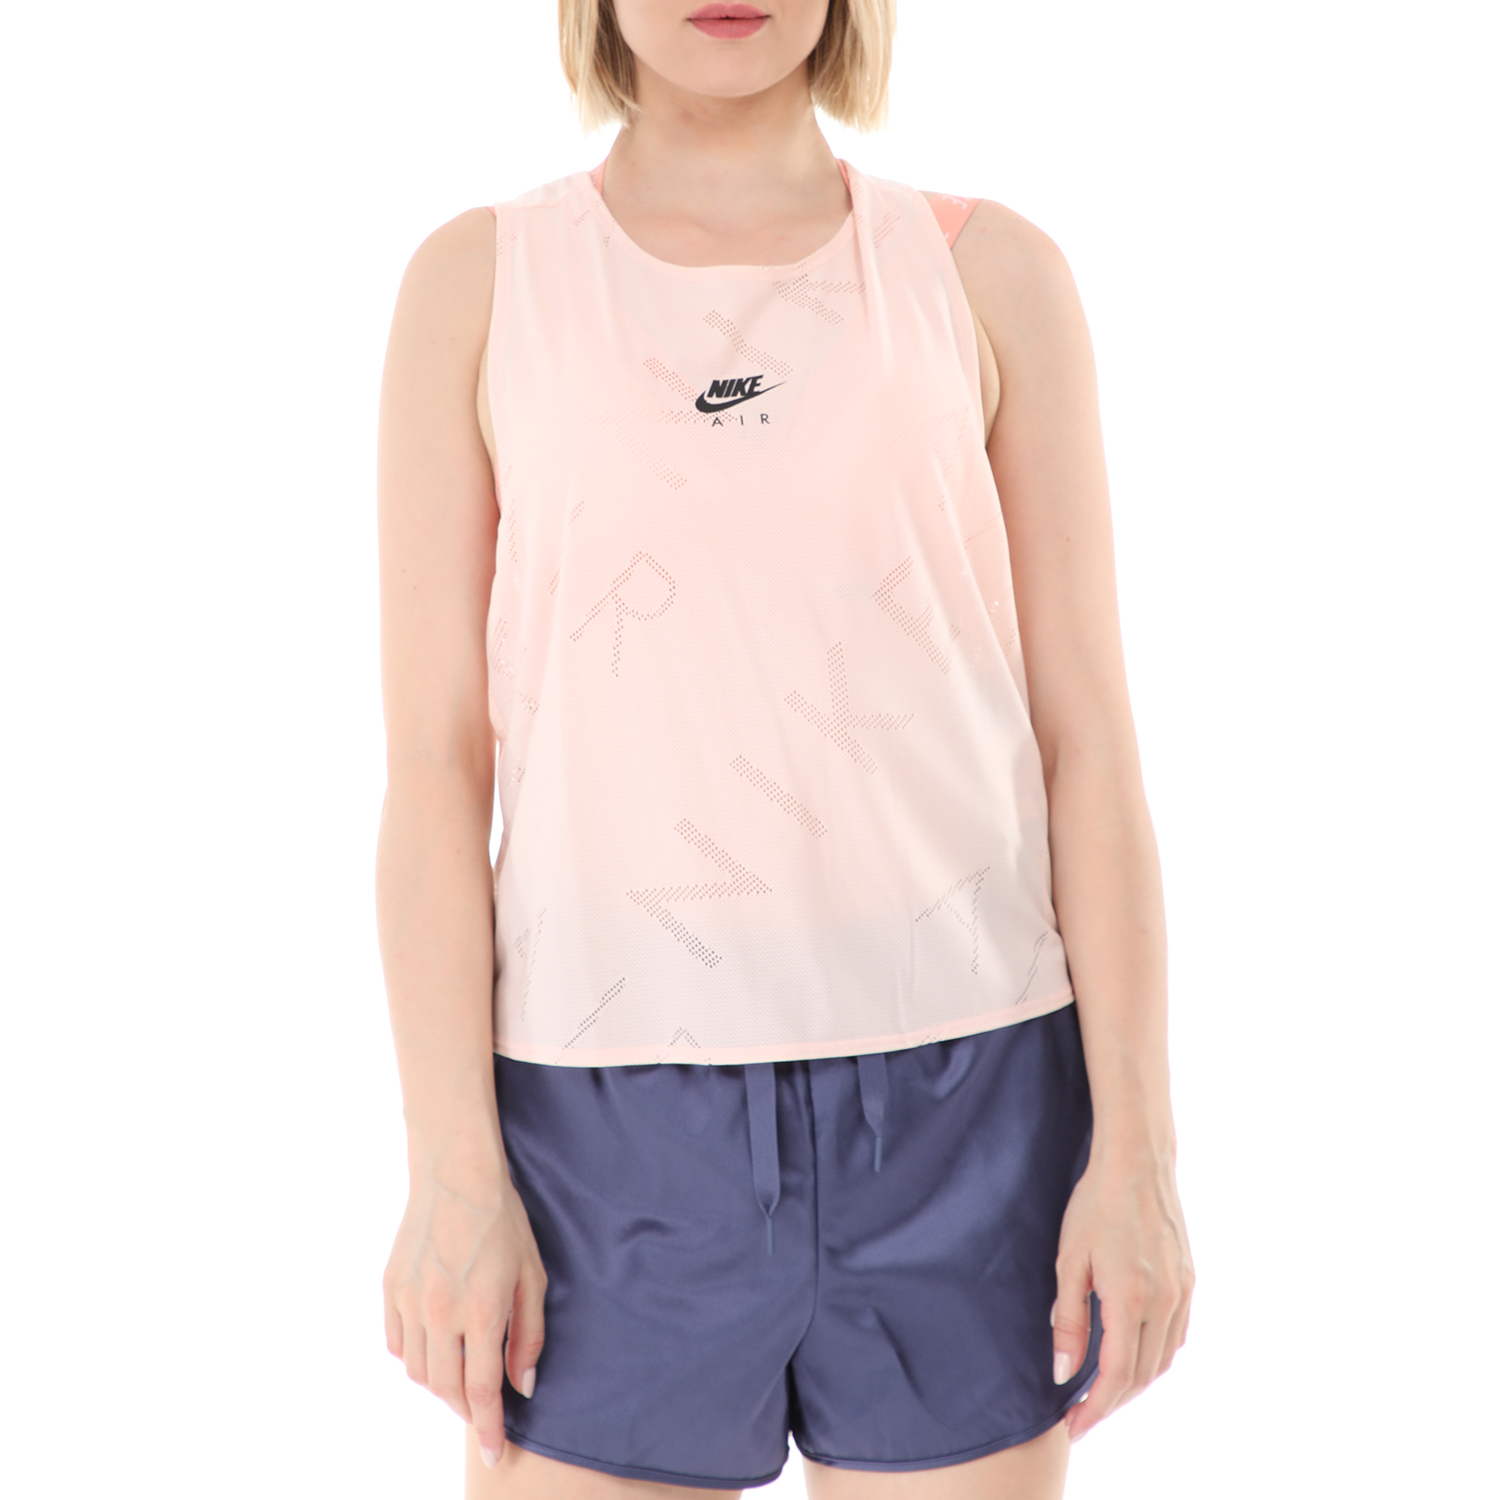 Γυναικεία/Ρούχα/Αθλητικά/T-shirt-Τοπ NIKE - Γυναικείο αθλητικό τοπ NIKE TANK AIR ροζ